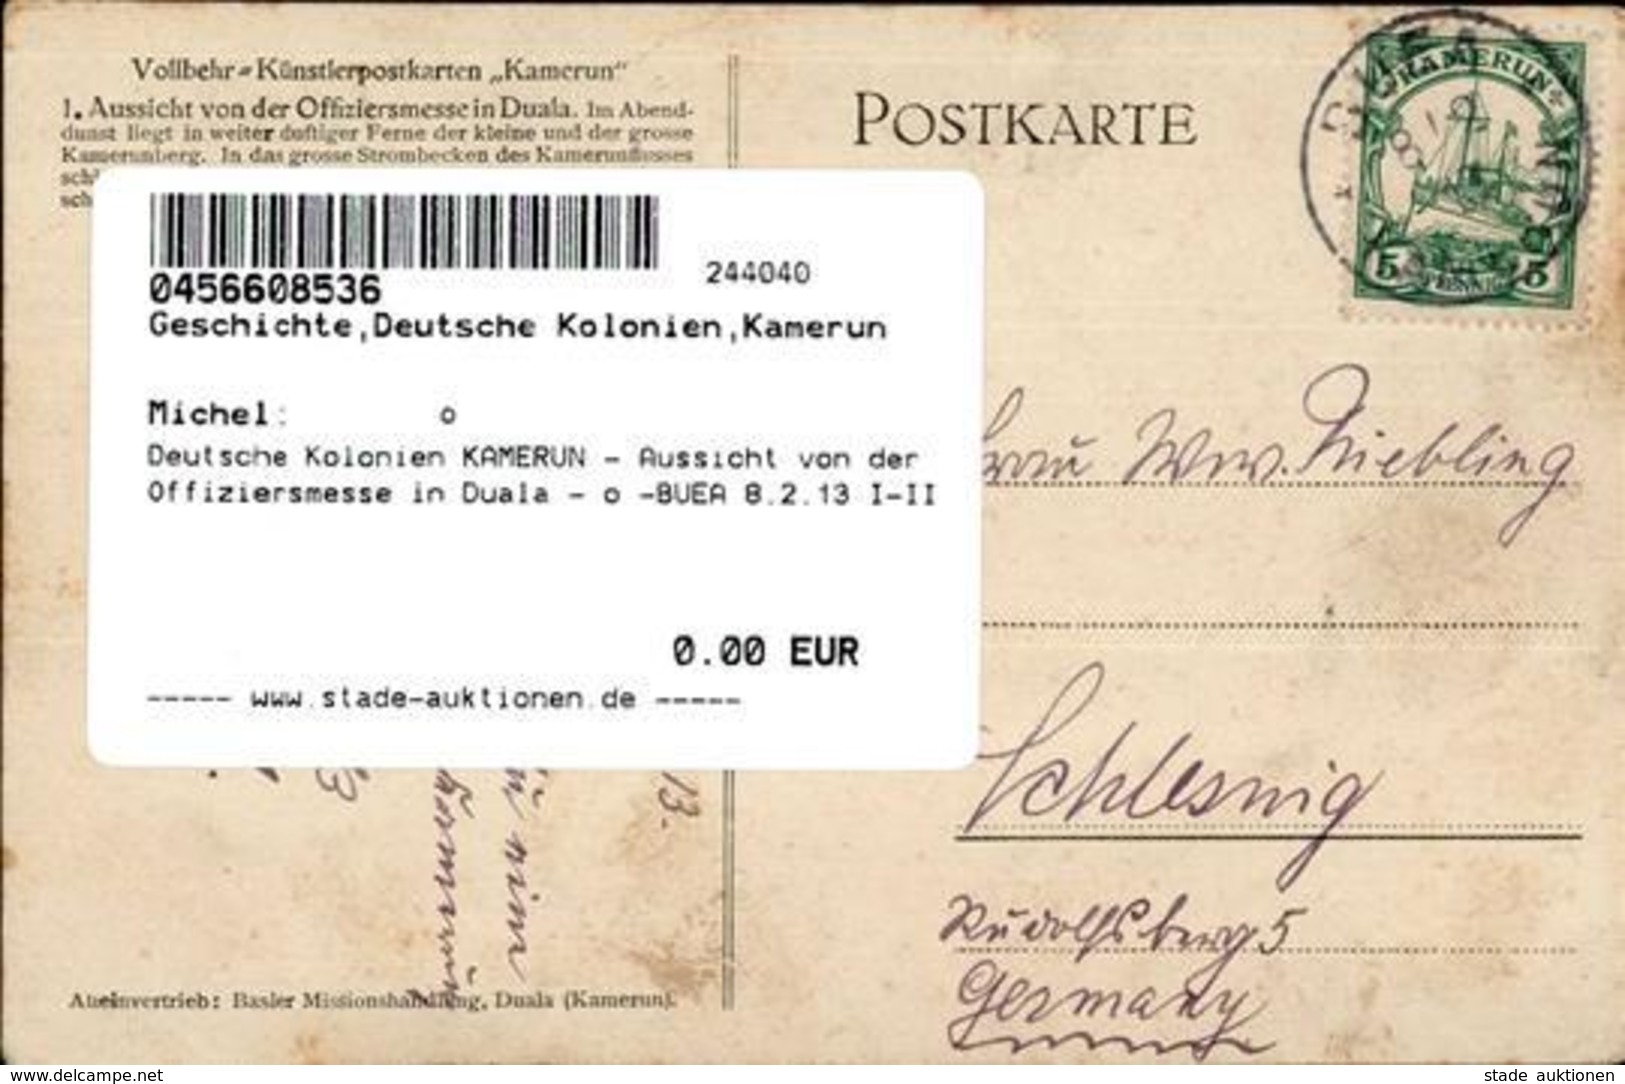 Deutsche Kolonien KAMERUN - Aussicht Von Der Offiziersmesse In Duala - O -BUEA 8.2.13 I-II Colonies - Non Classés